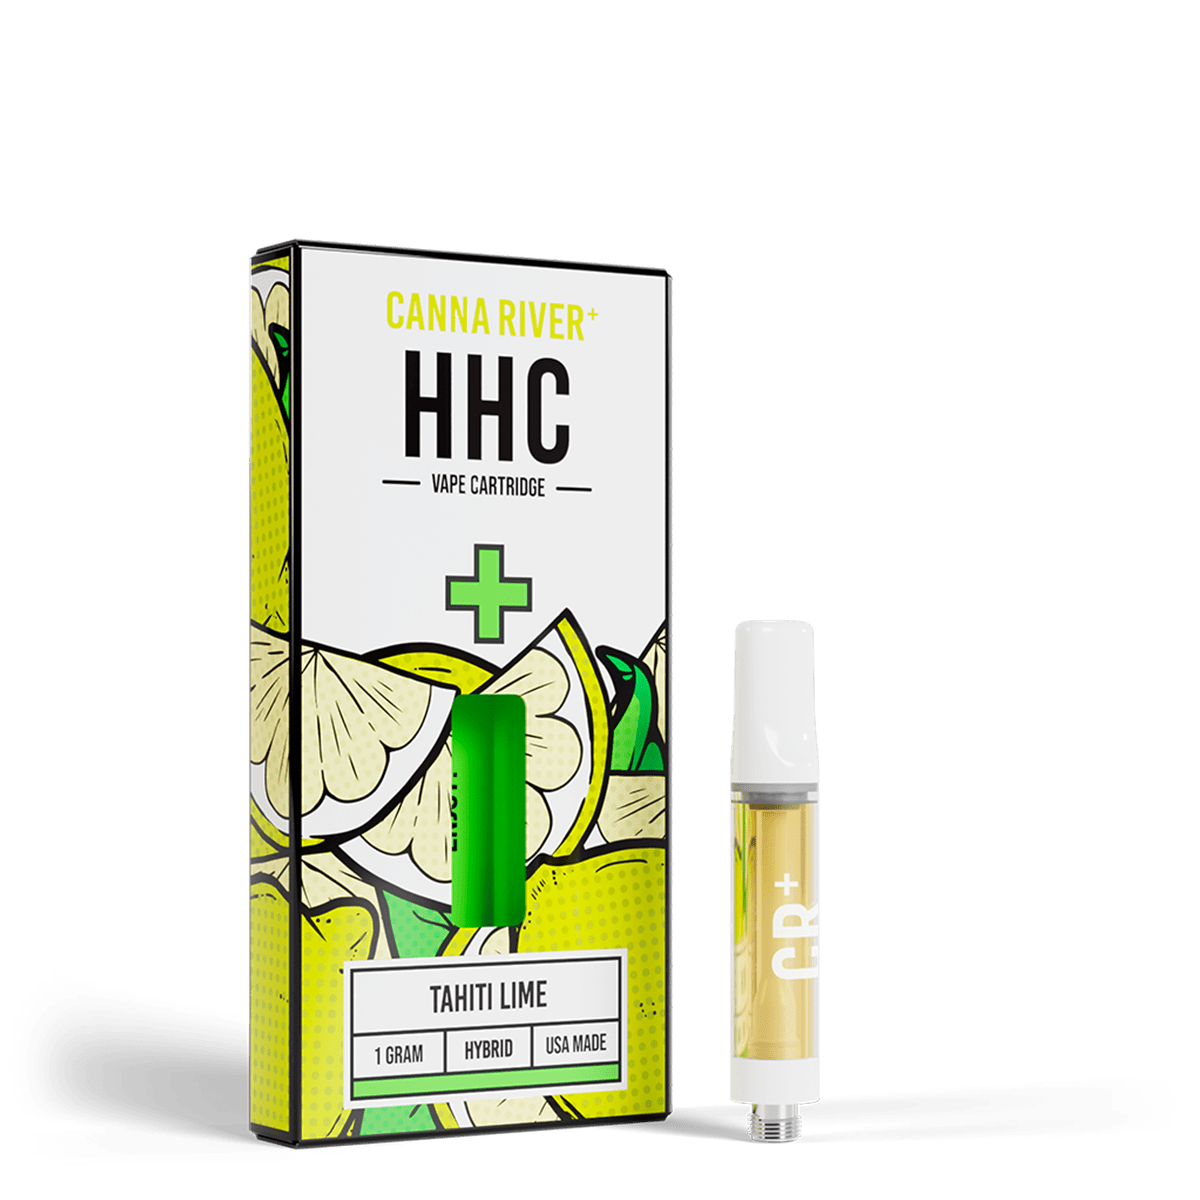 Canna River - HHC Cartridge - Tahiti Lime - 1 Gram (Hybrid)